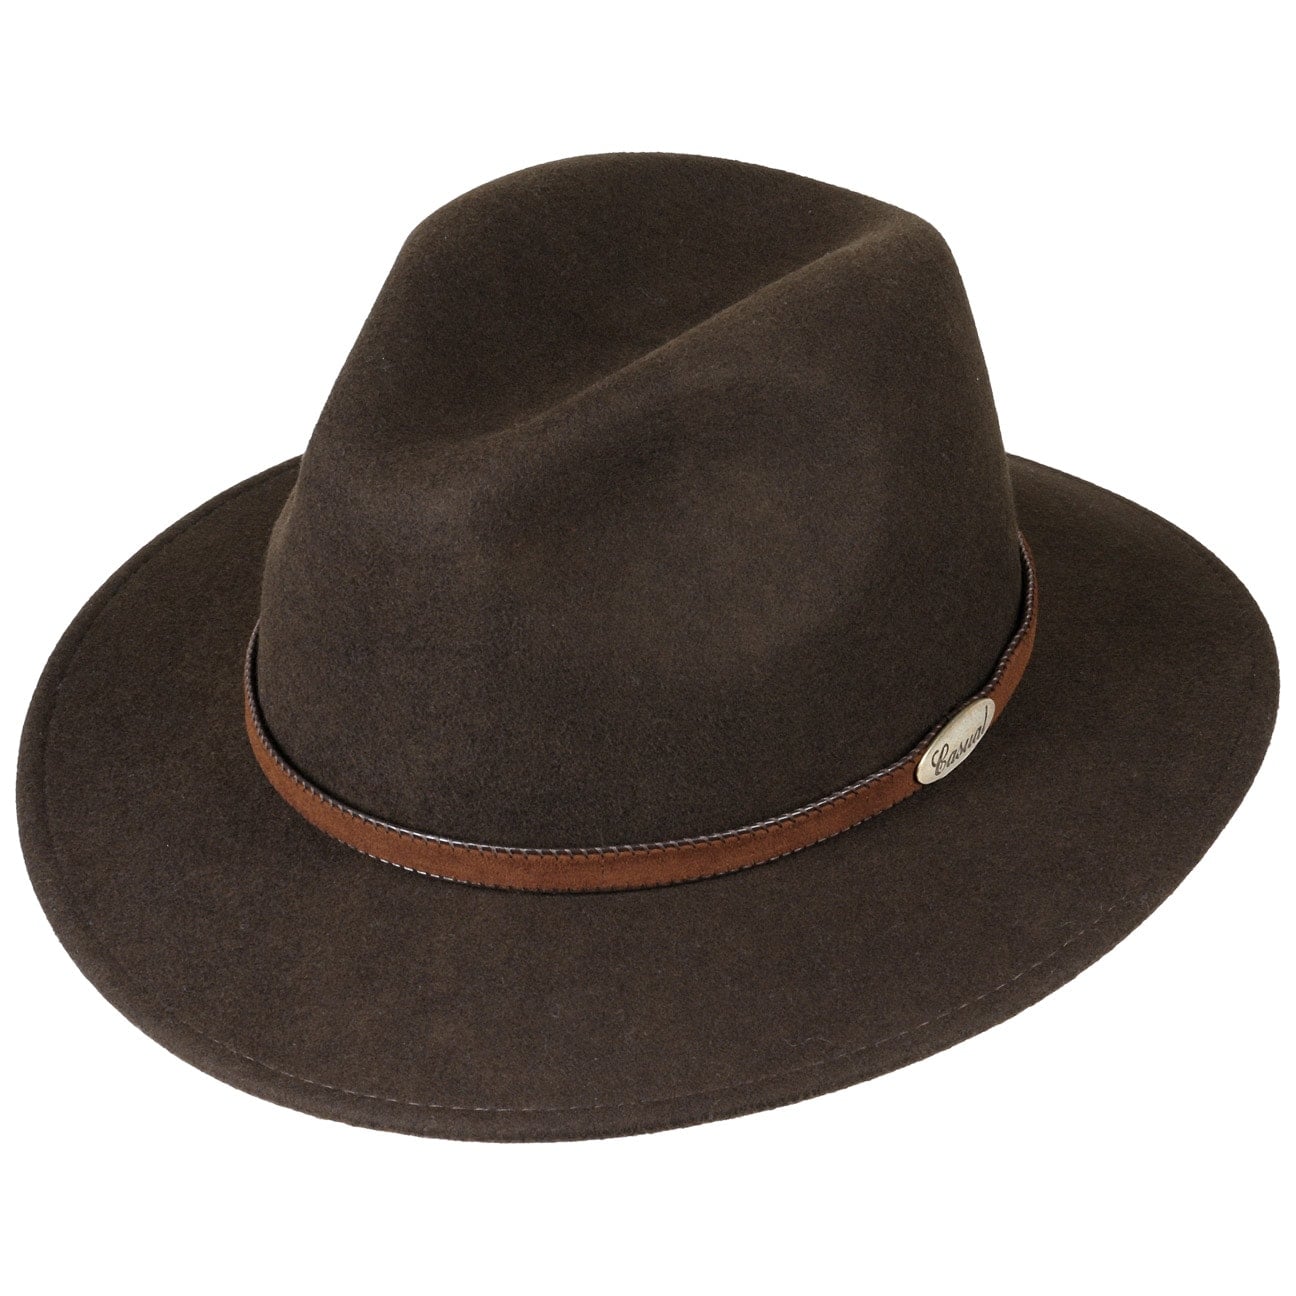 Casual Traveller Wool Felt Hat by Lierys